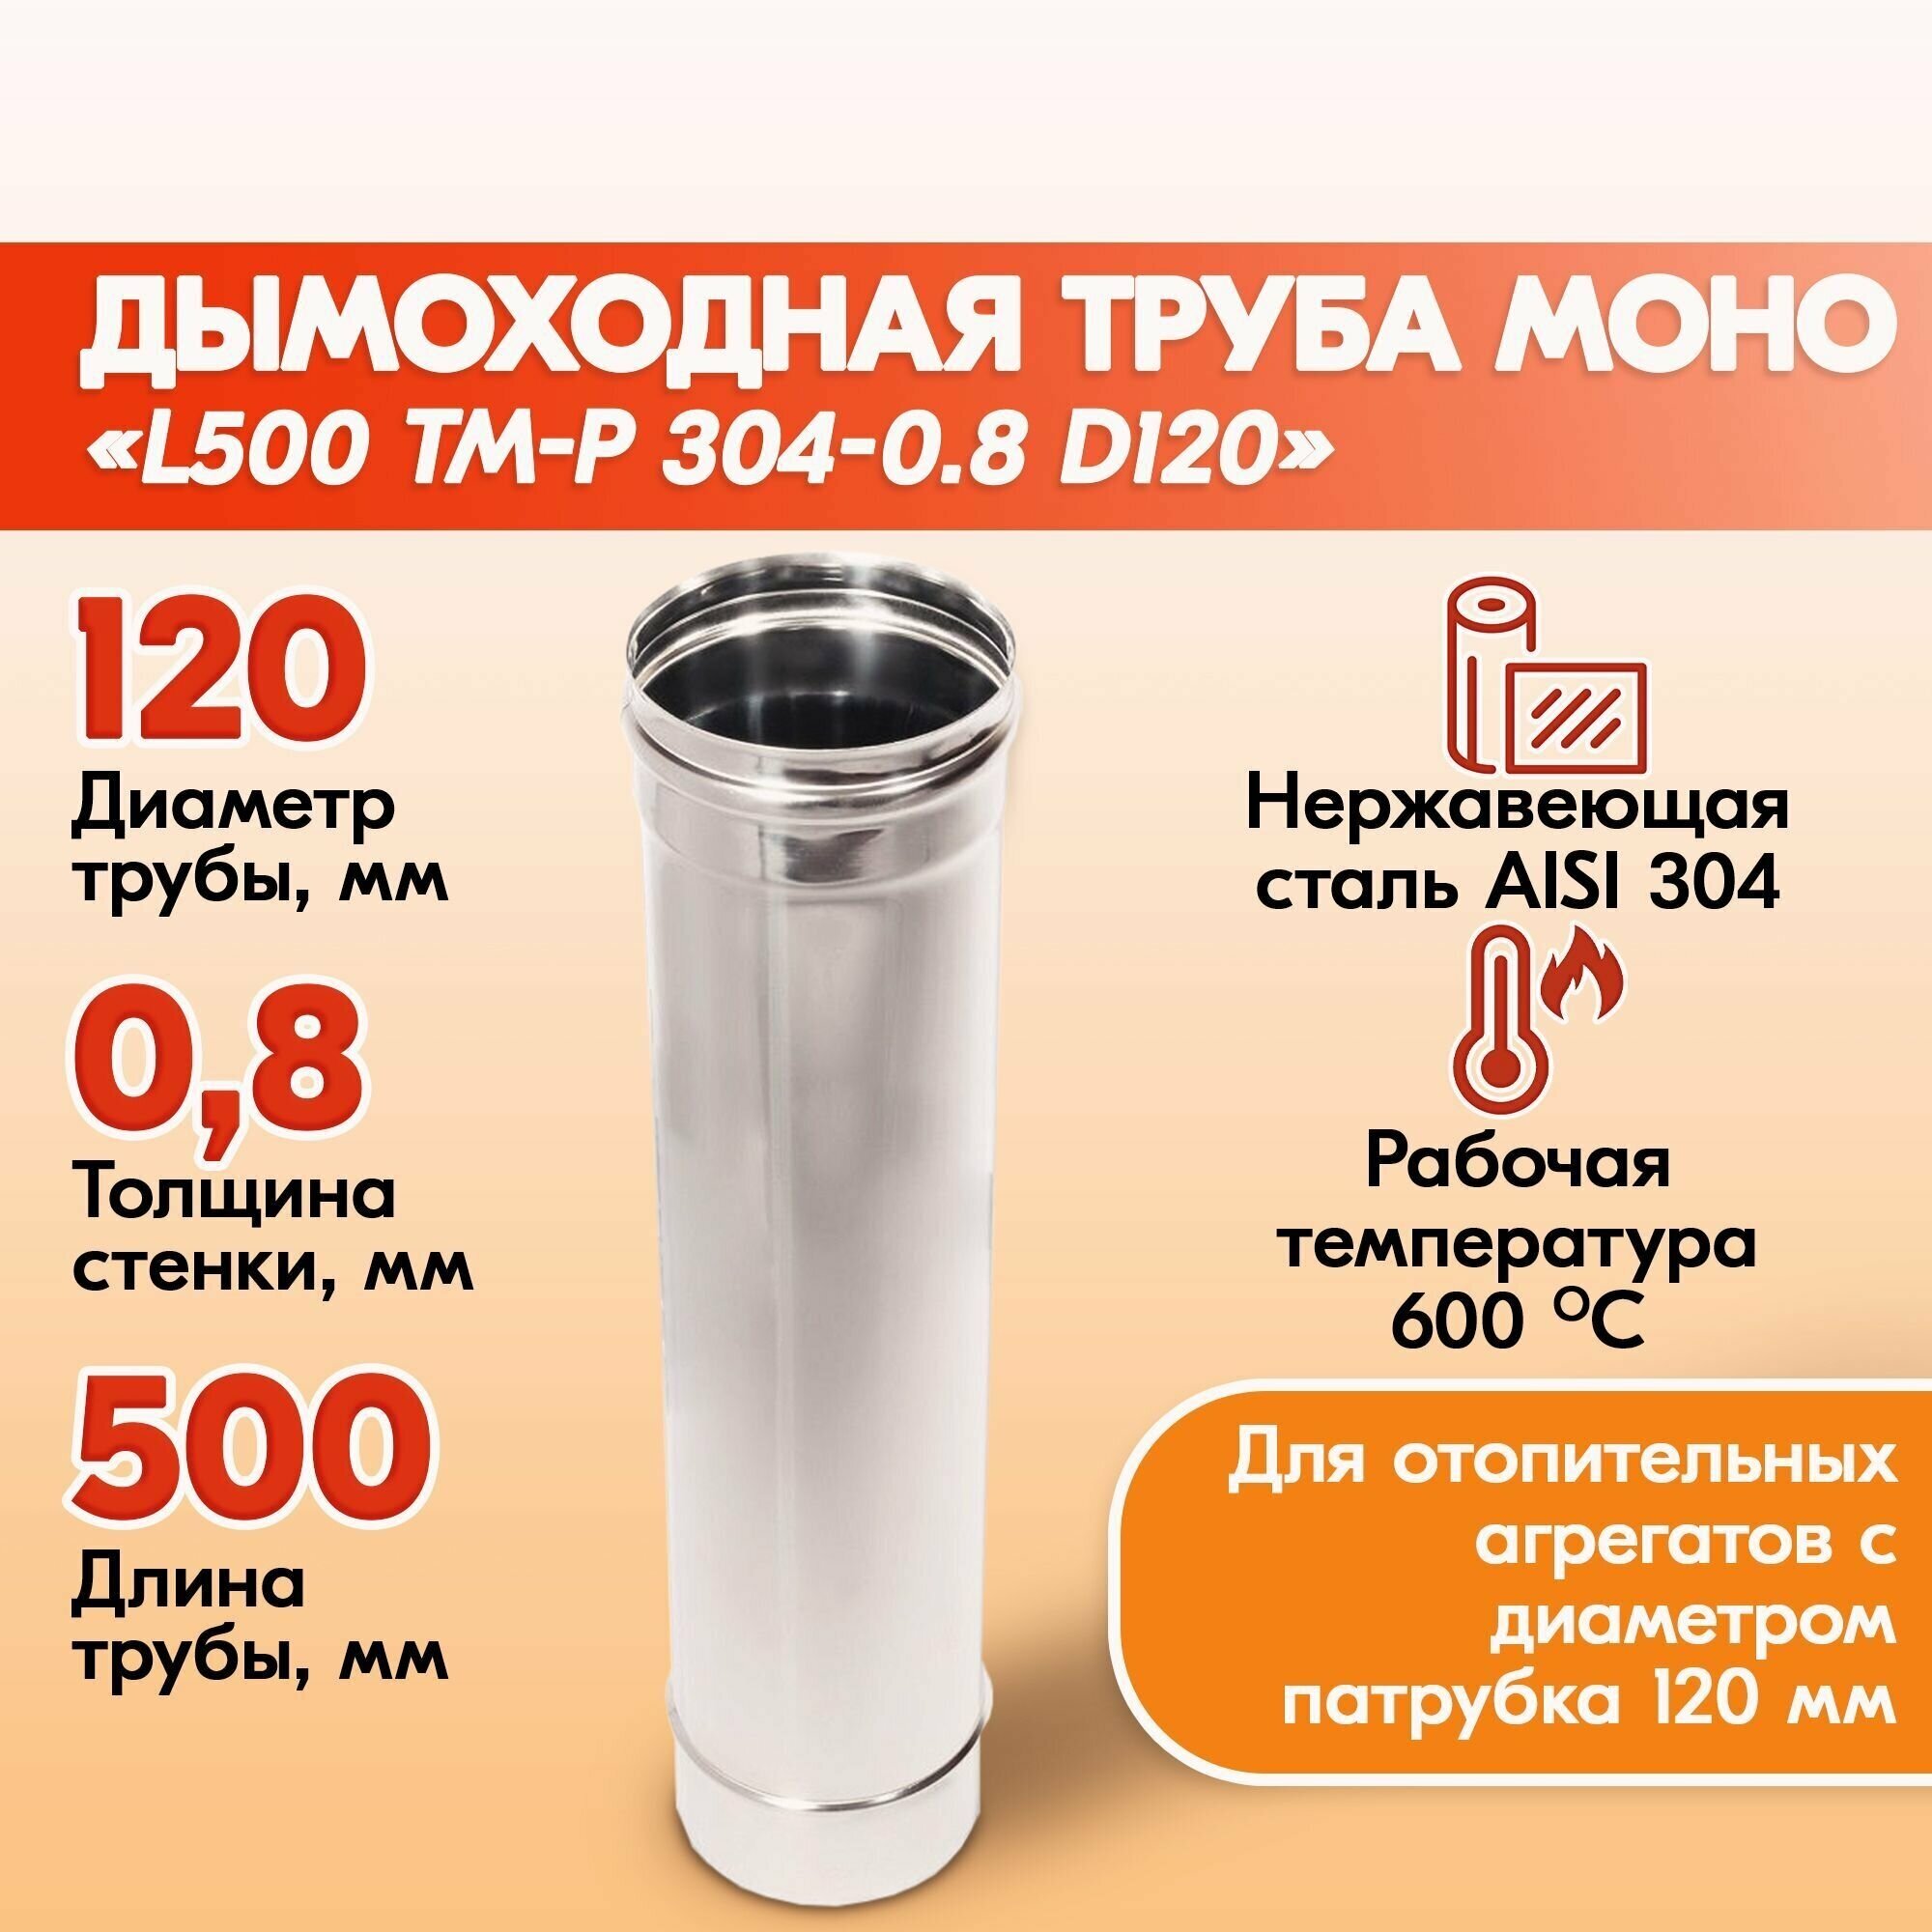 Печная труба Моно L500 ТМ-Р 304-0.8 D120 из нержавеющей стали, газовый дымоход для котлов, труба дымоходная для печи в баню, дом, дачу